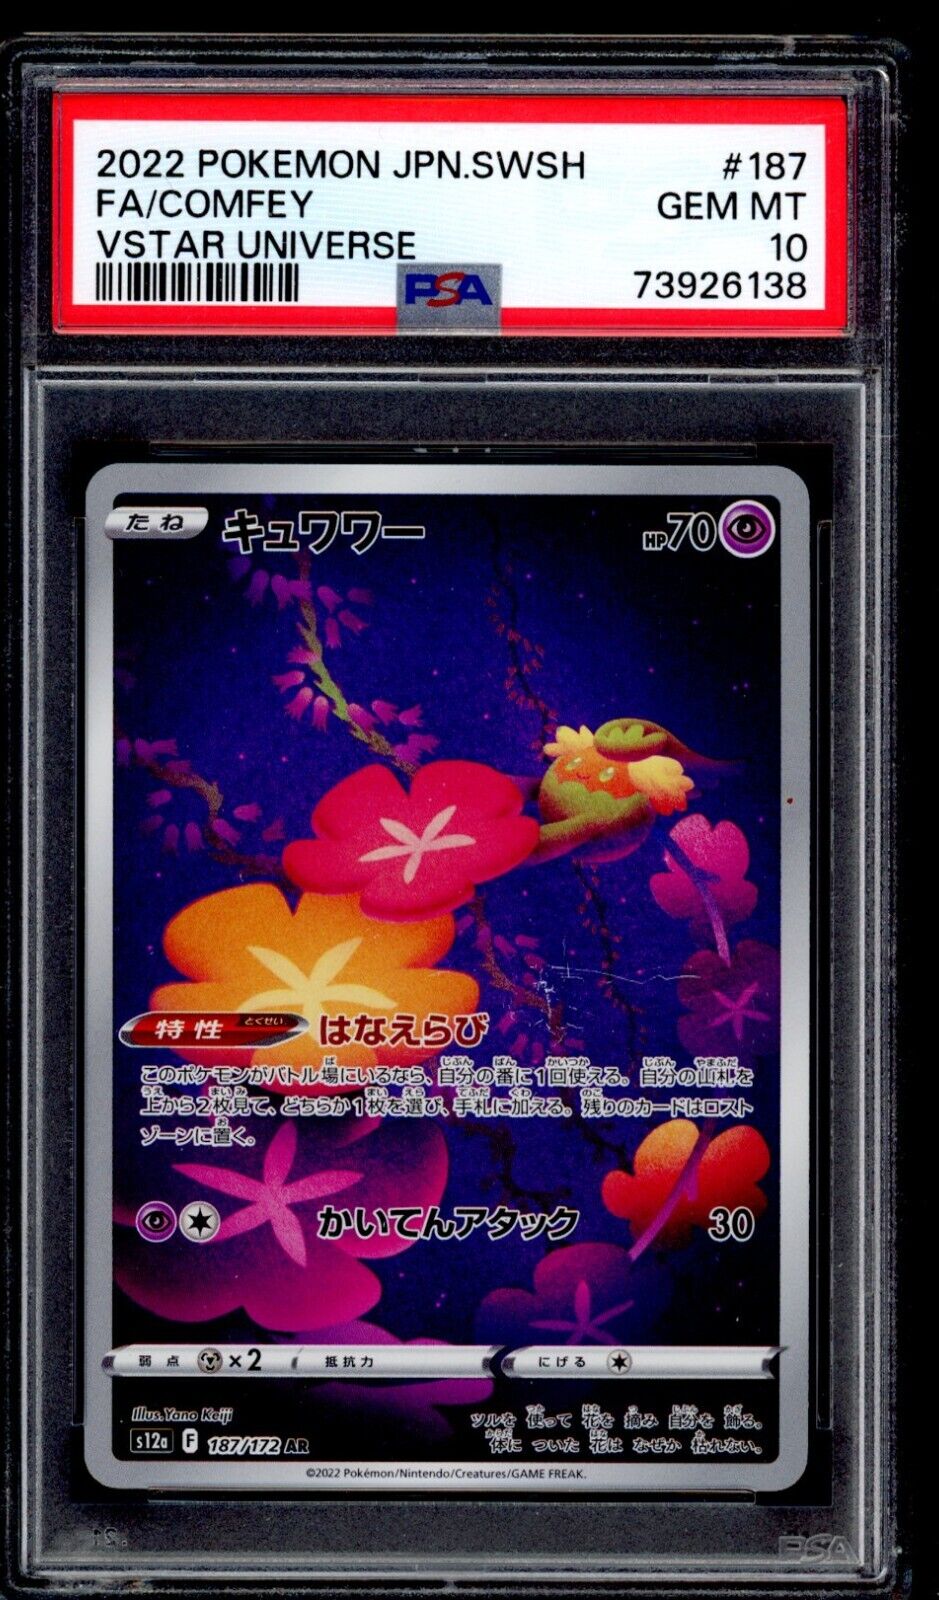 PSA 10 Comfey 2022 Pokemon Card s12a 187/172 Vstar Universe